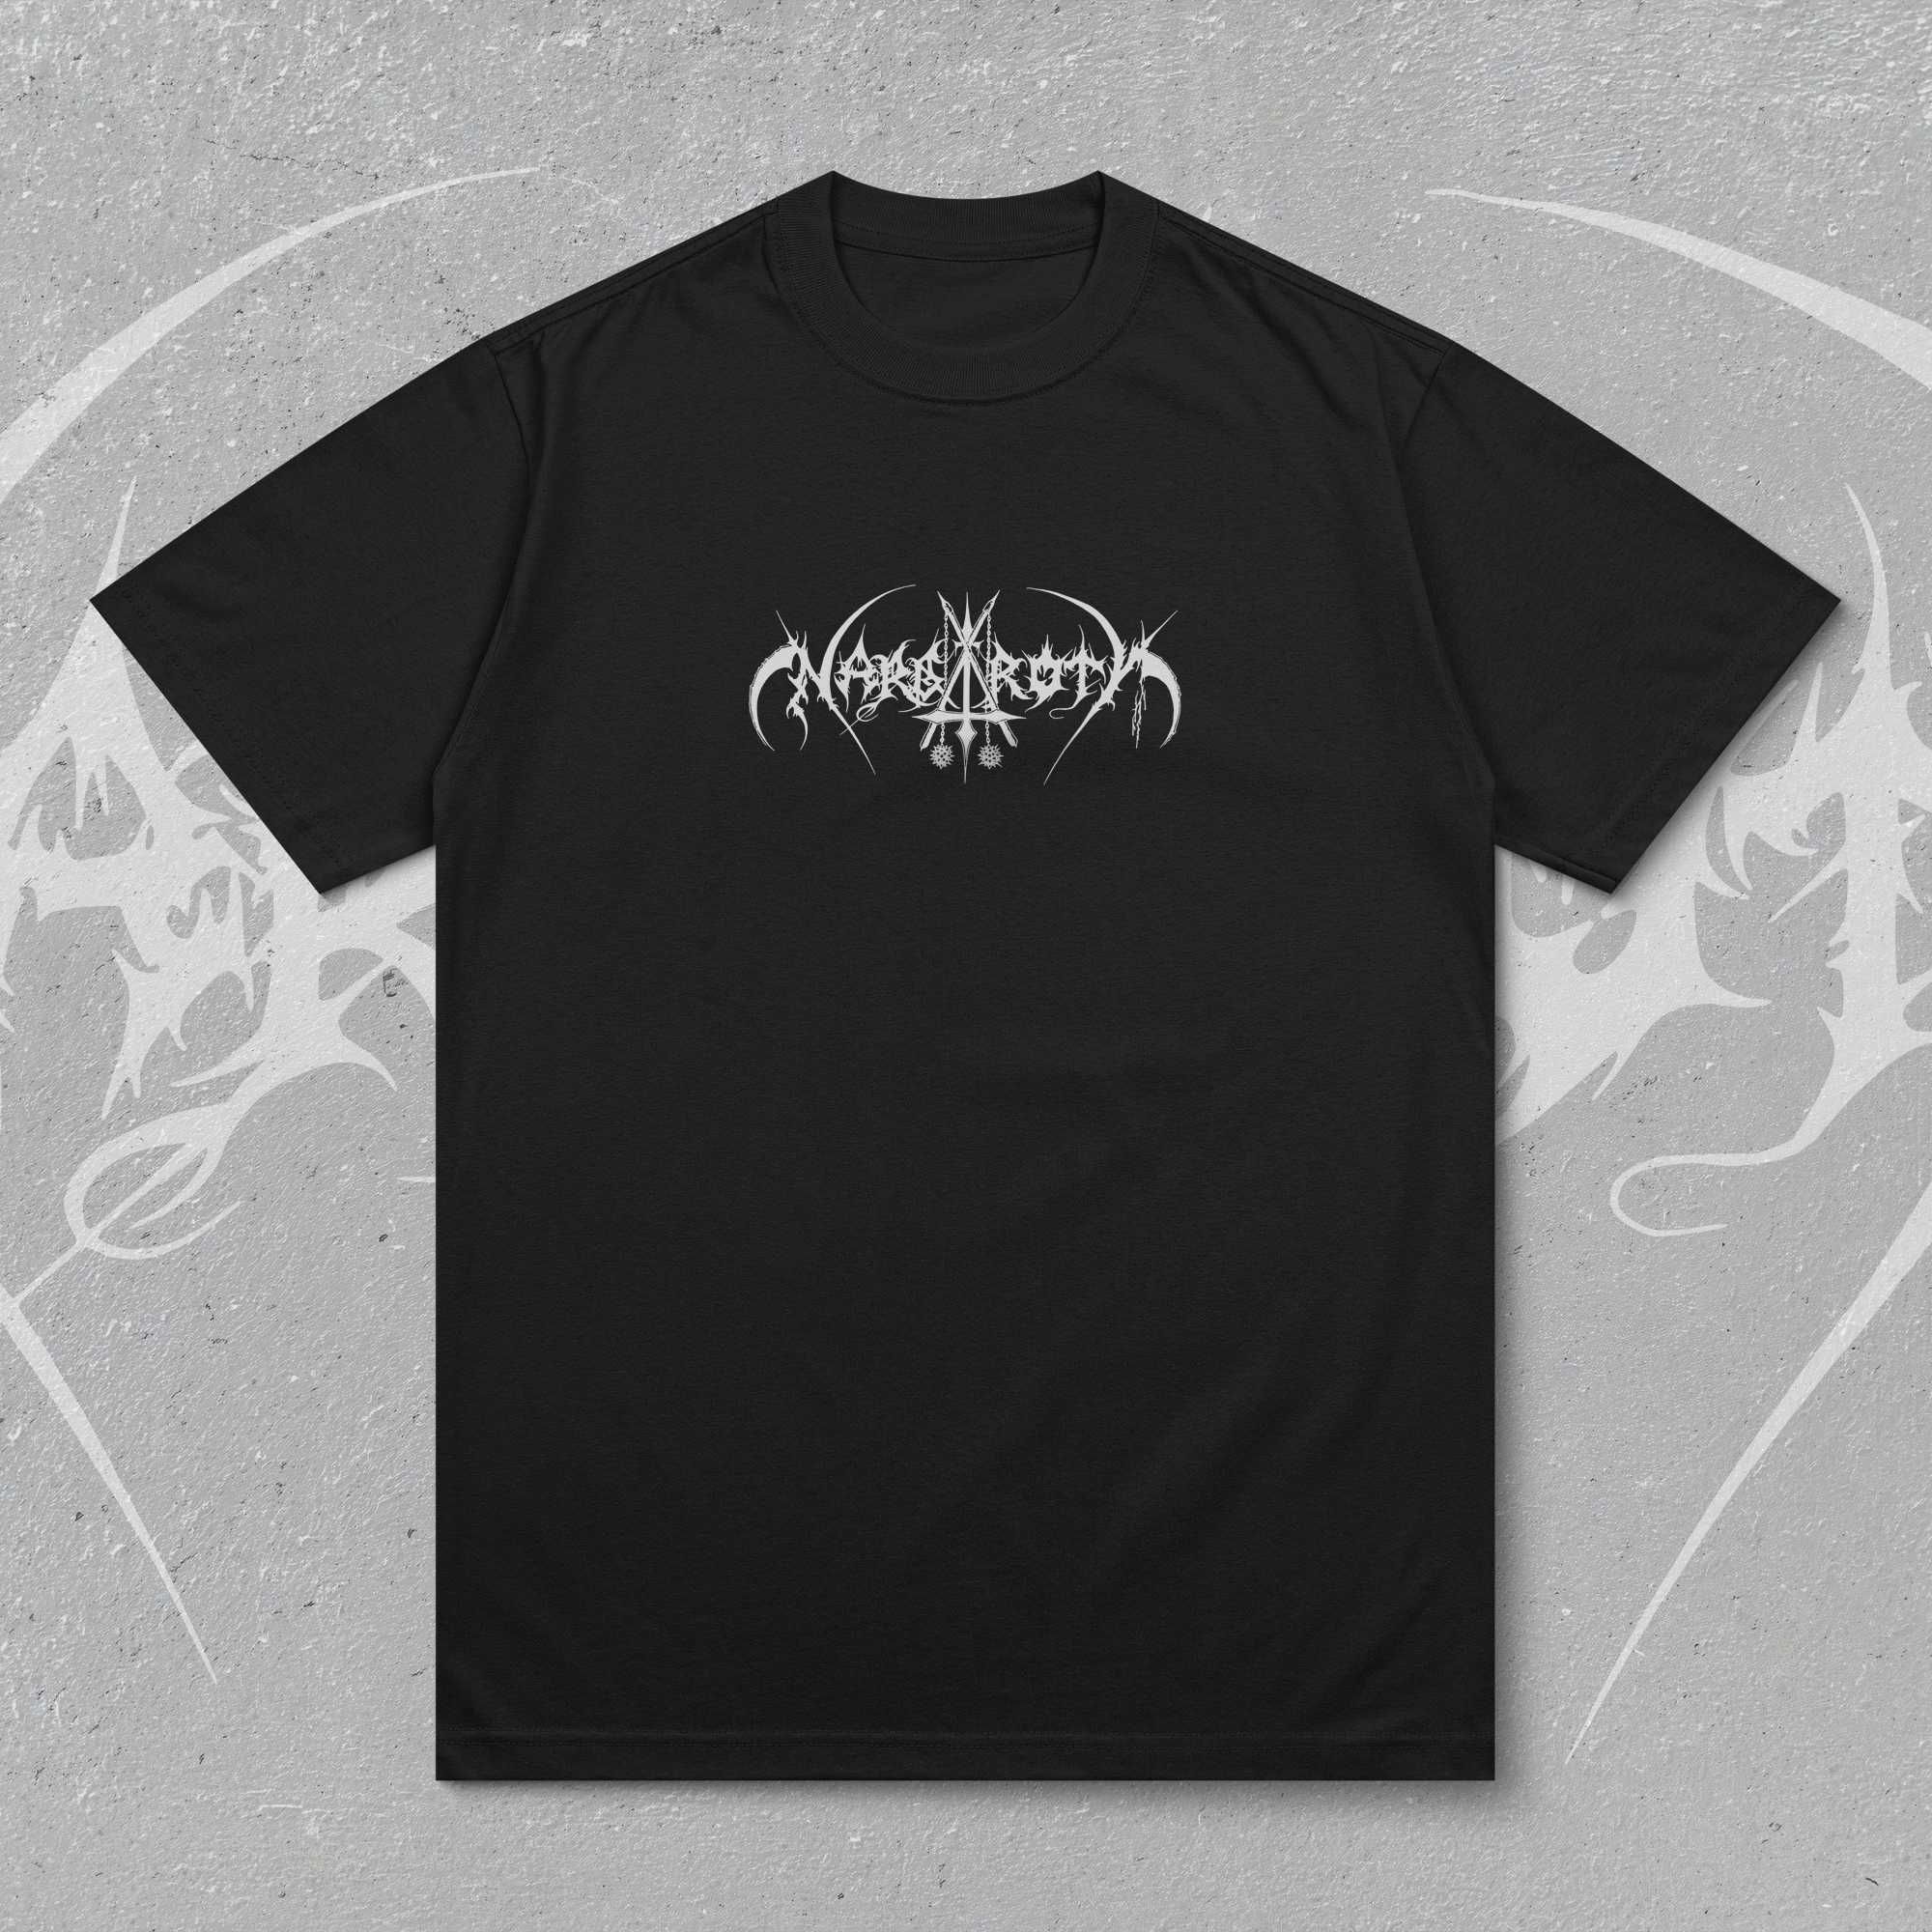 Nargaroth футболка, Nargaroth T-Shirt, Black metal